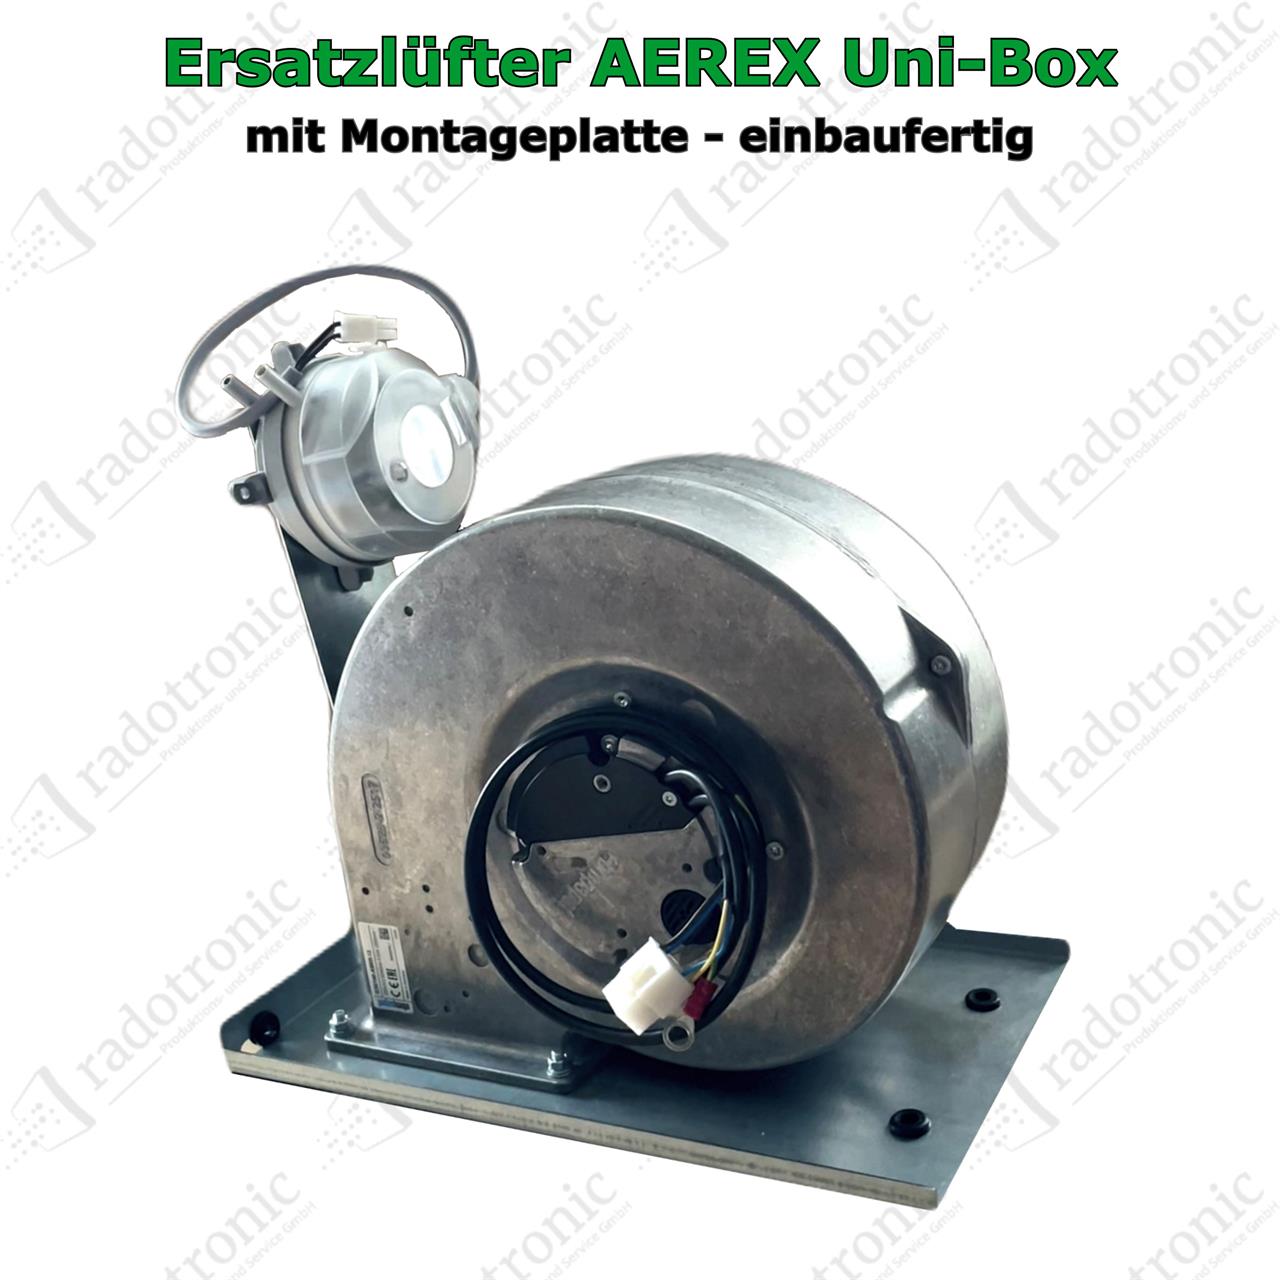 Ersatzventilator komplett für Aerex Uni-Box R-300-01 (Modell bis ca. 2017/18)